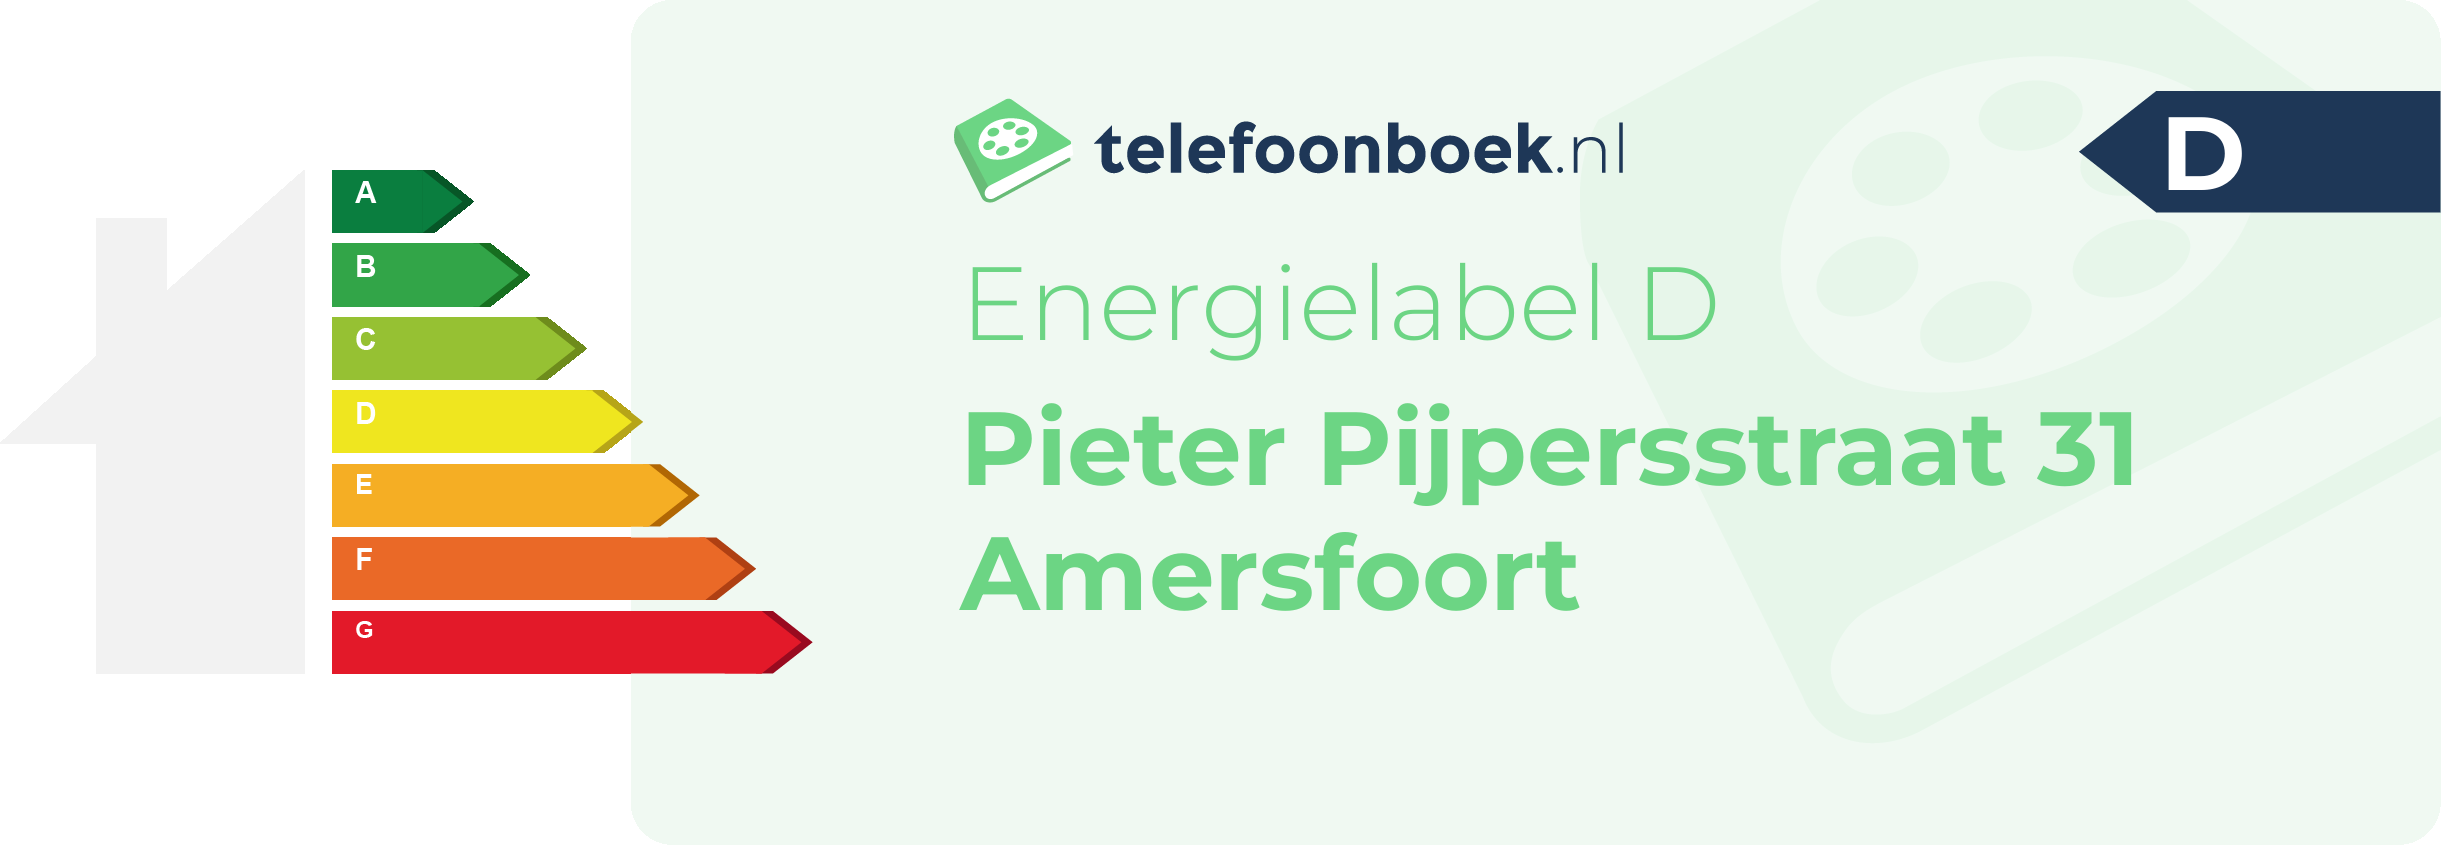 Energielabel Pieter Pijpersstraat 31 Amersfoort